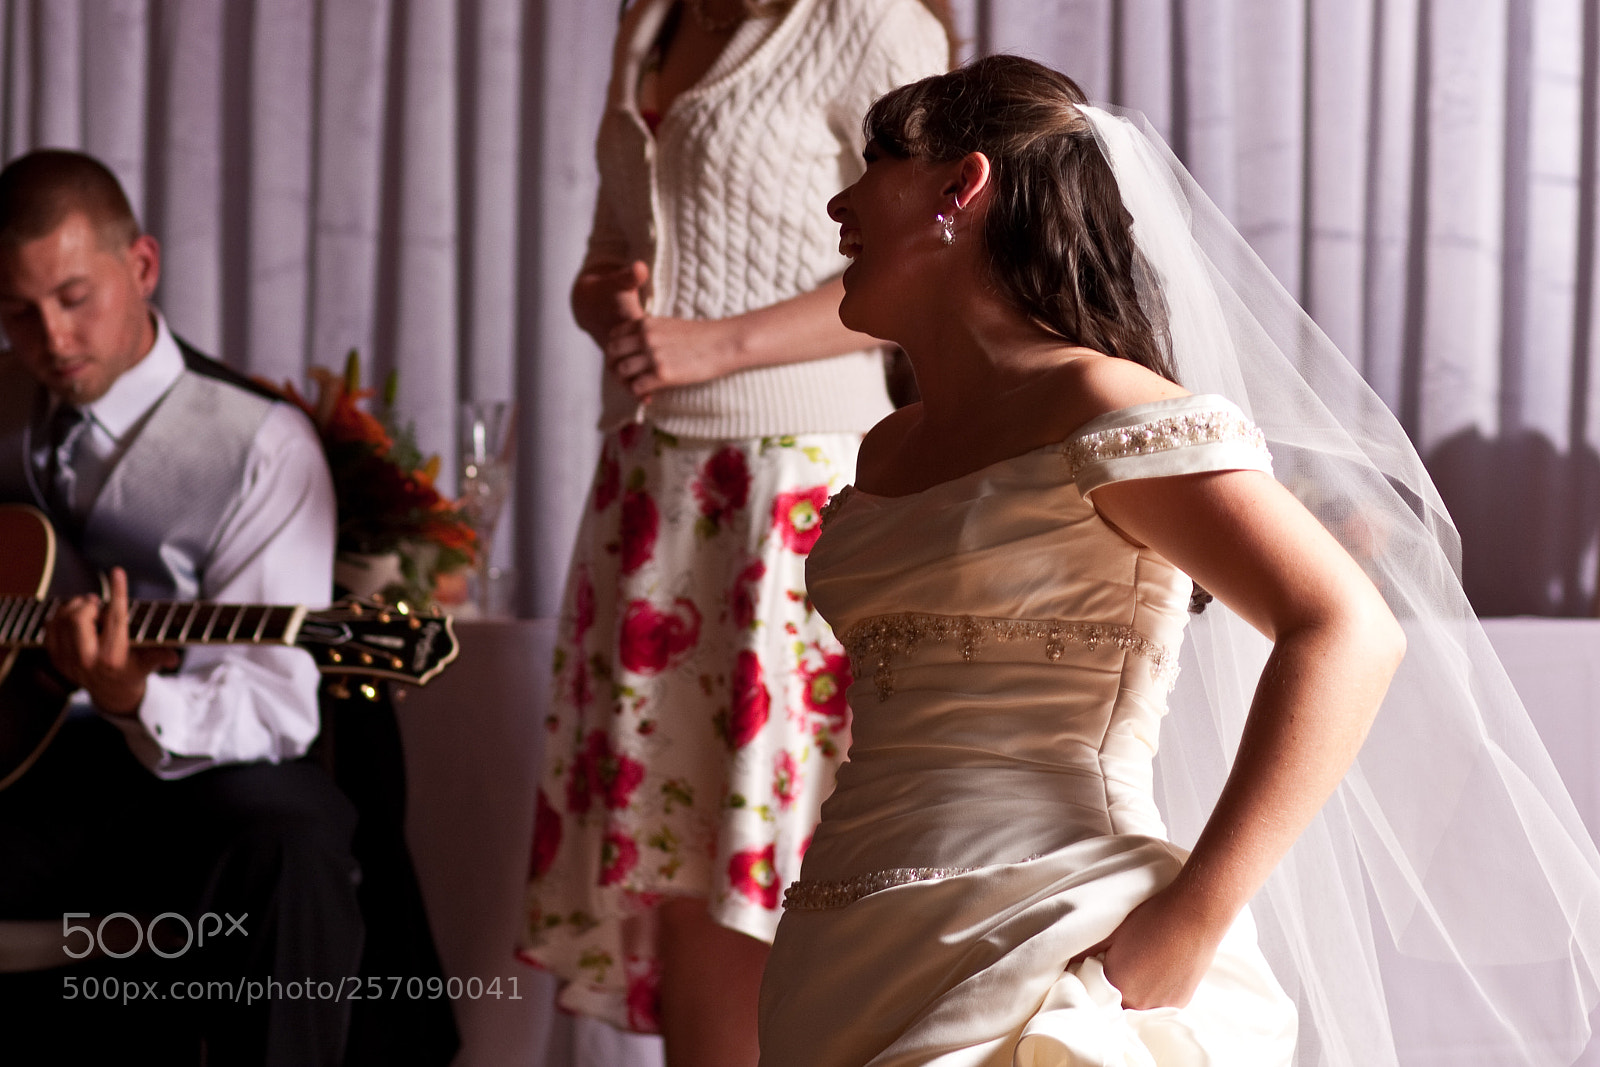 Canon EOS 40D sample photo. Dancing bride photography